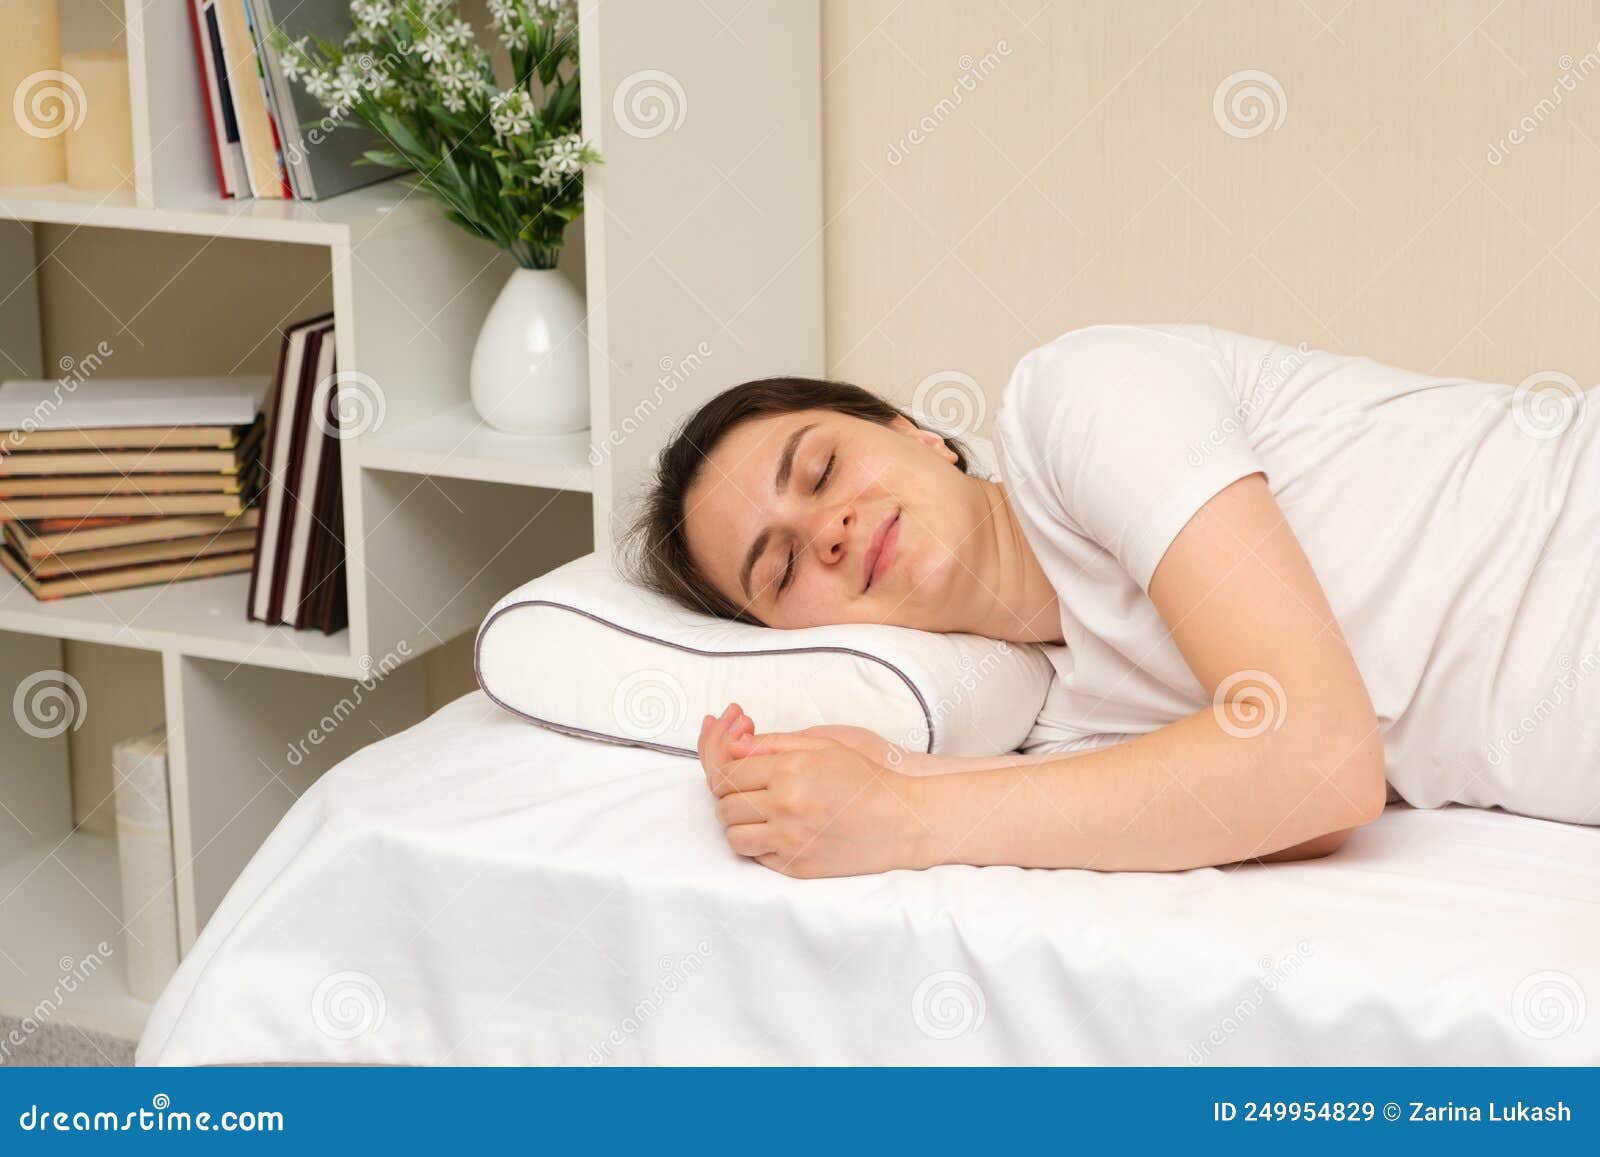 Una Donna Dorme Su Un Cuscino Ortopedico Fatto Di Schiuma Di Memoria  Sdraiata Su Un Letto. Il Cuscino Corretto Per Una Buona Salut Immagine  Stock - Immagine di medico, sogno: 249954829